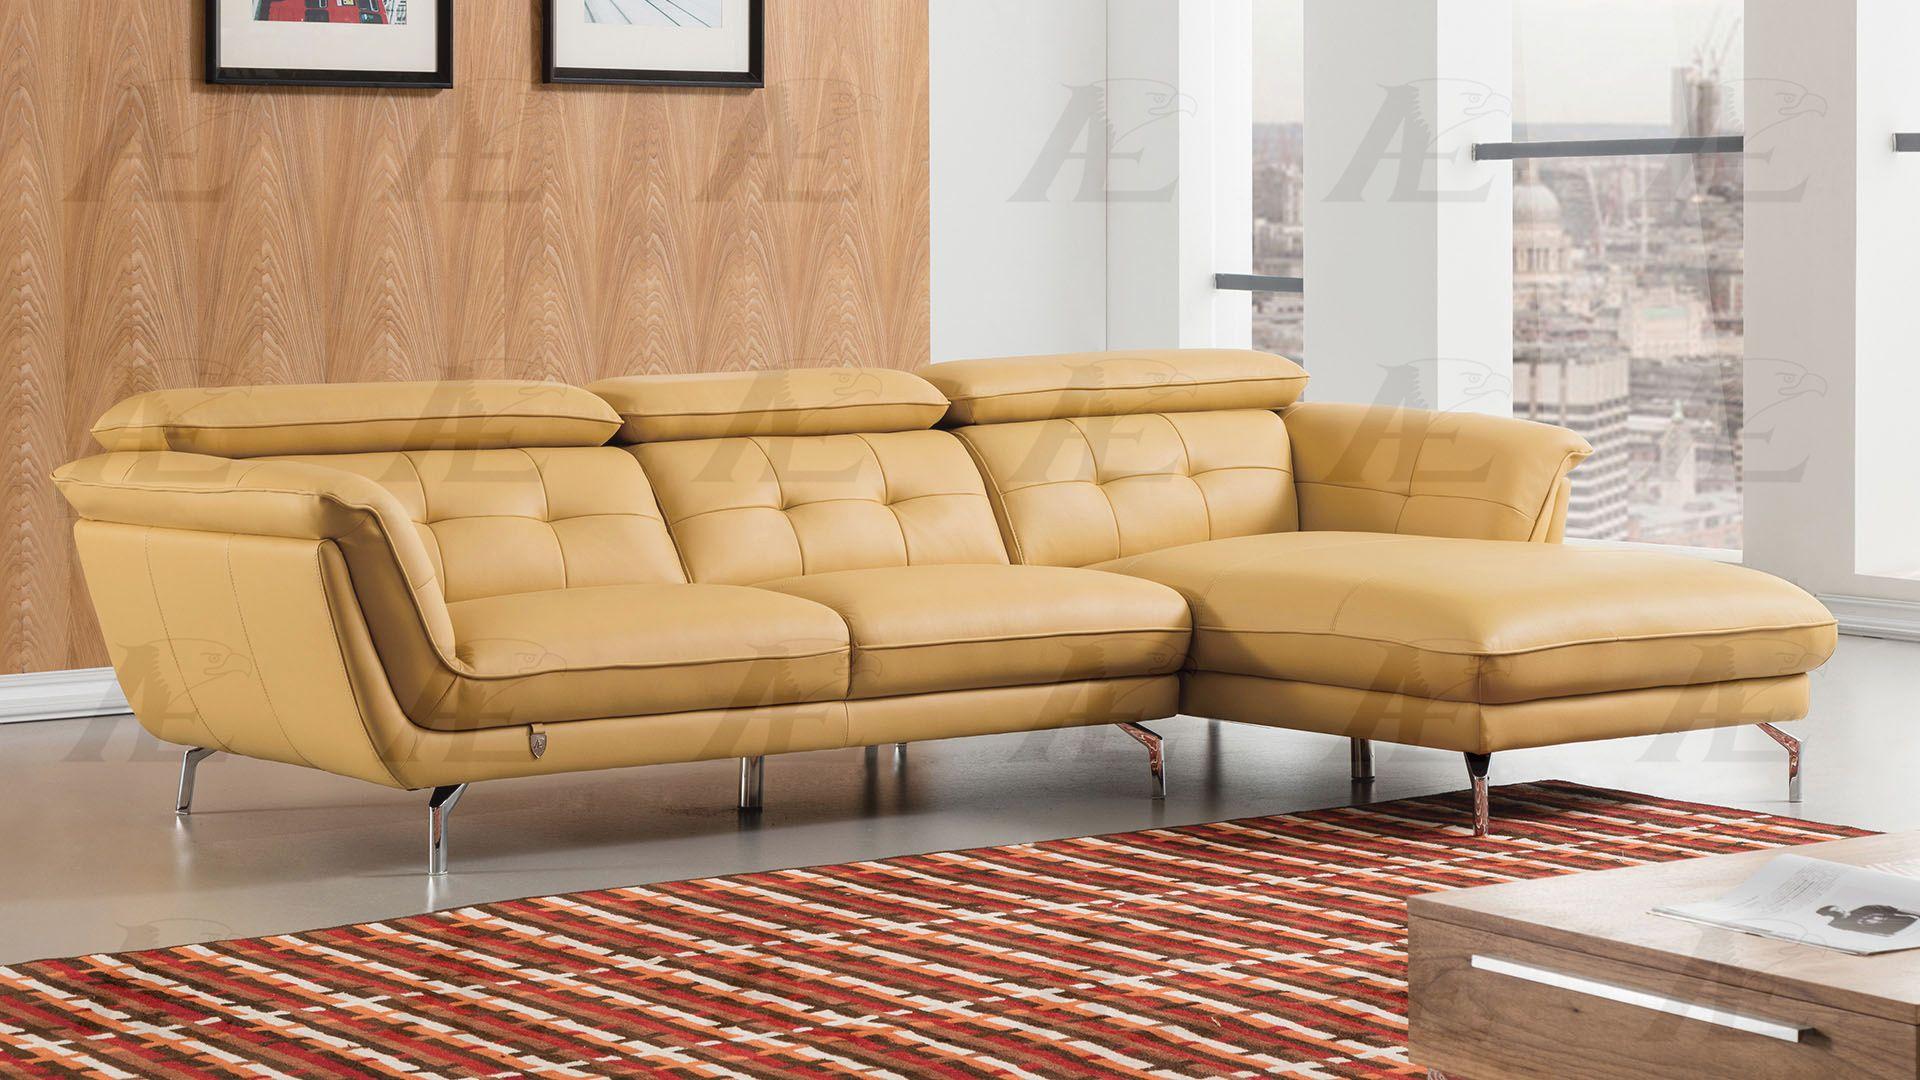 

    
American Eagle Furniture EK-L083-YO Sectional Sofa Yellow EK-L083-YO
